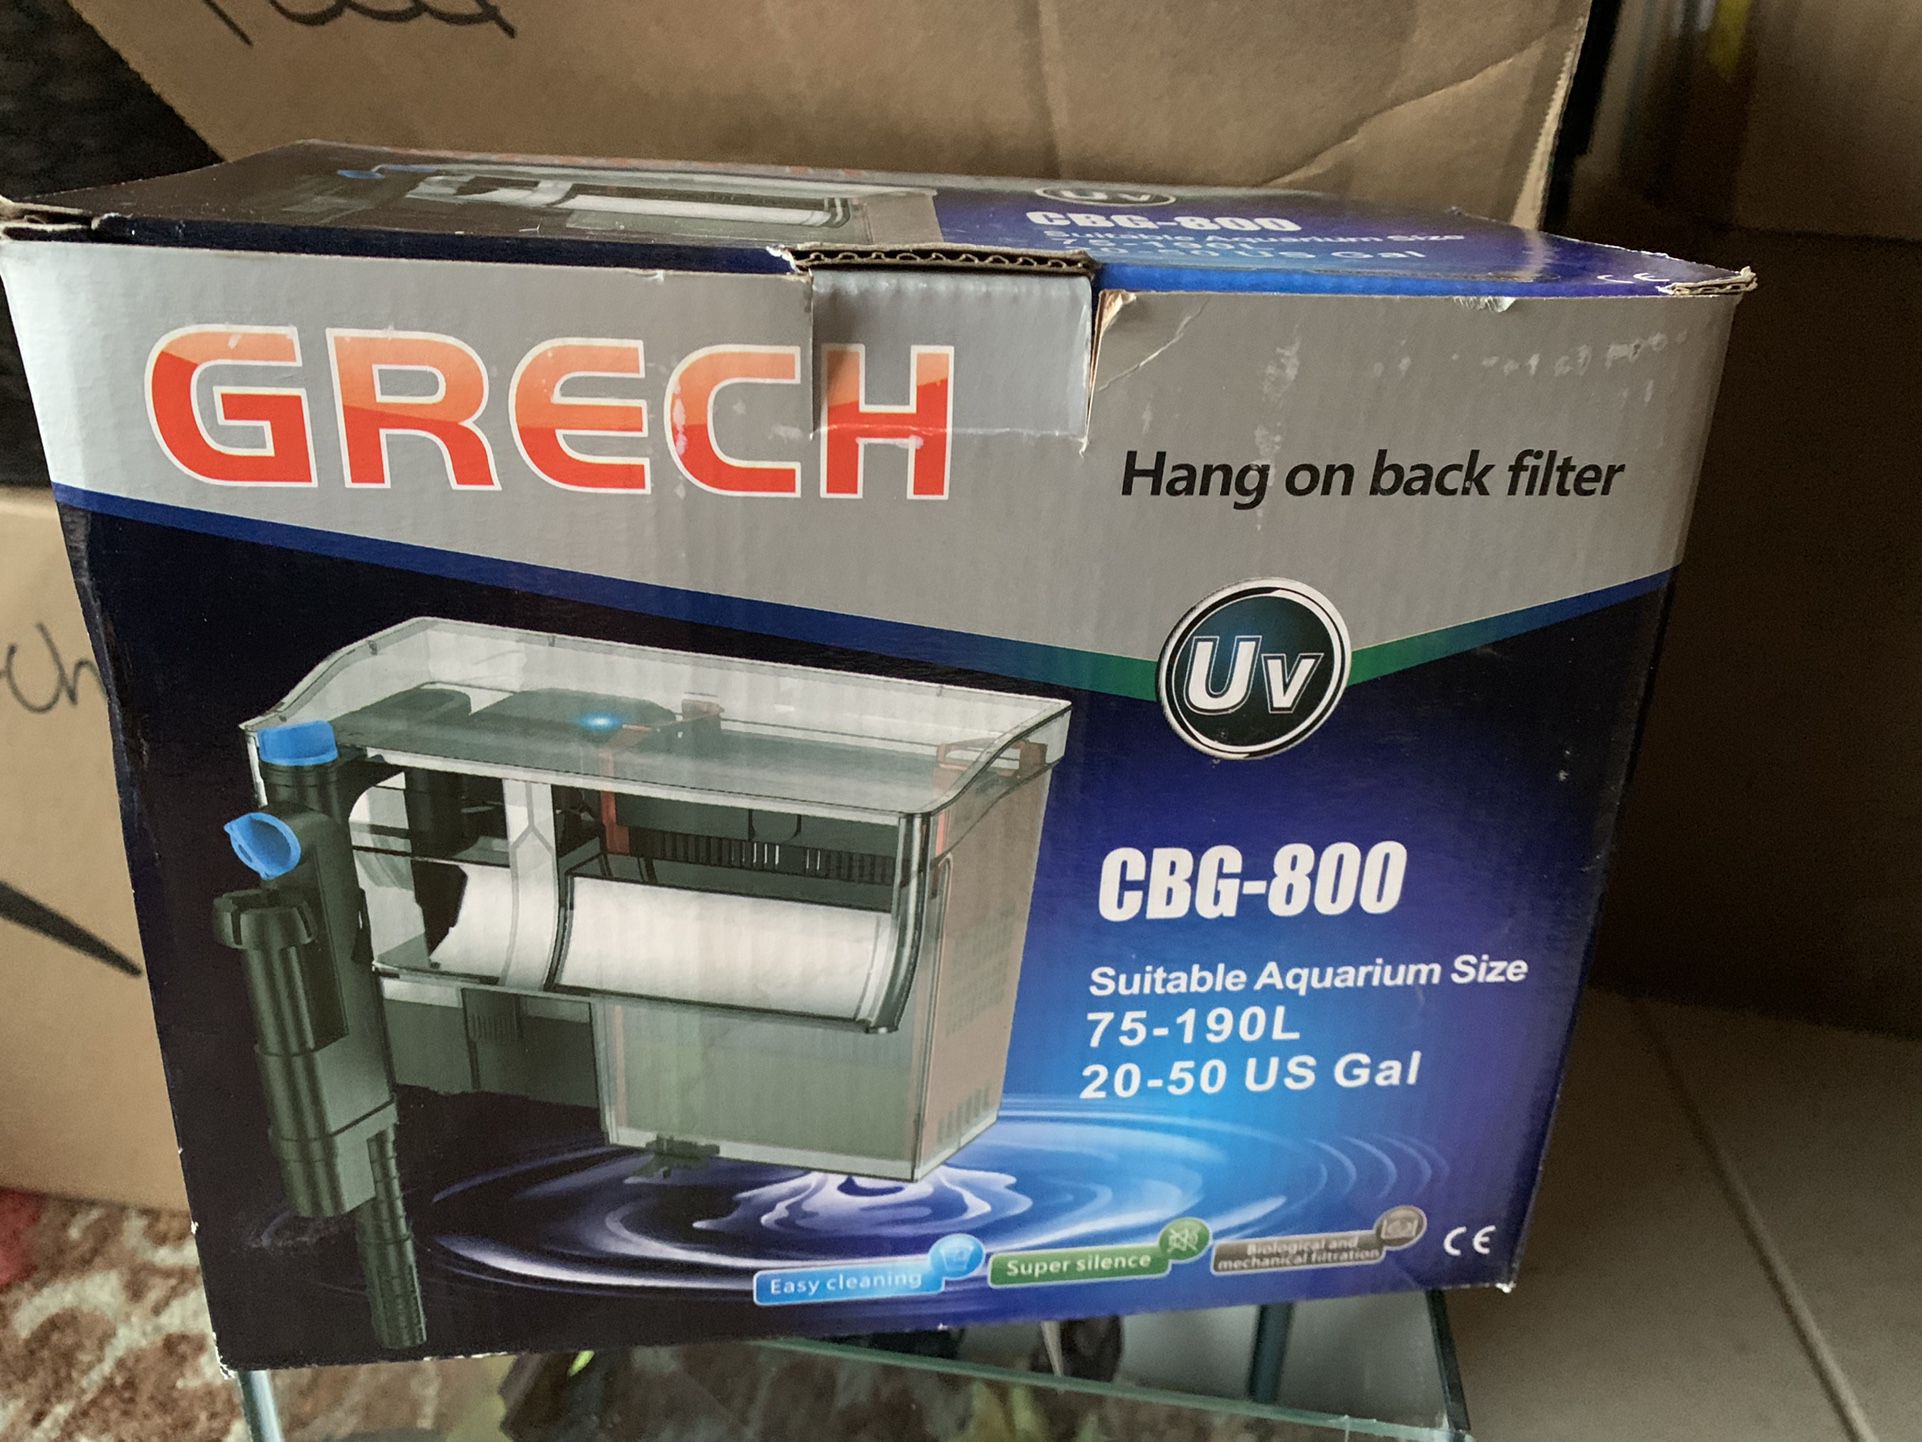 Grech CBG-800 Fish Fliter With UV